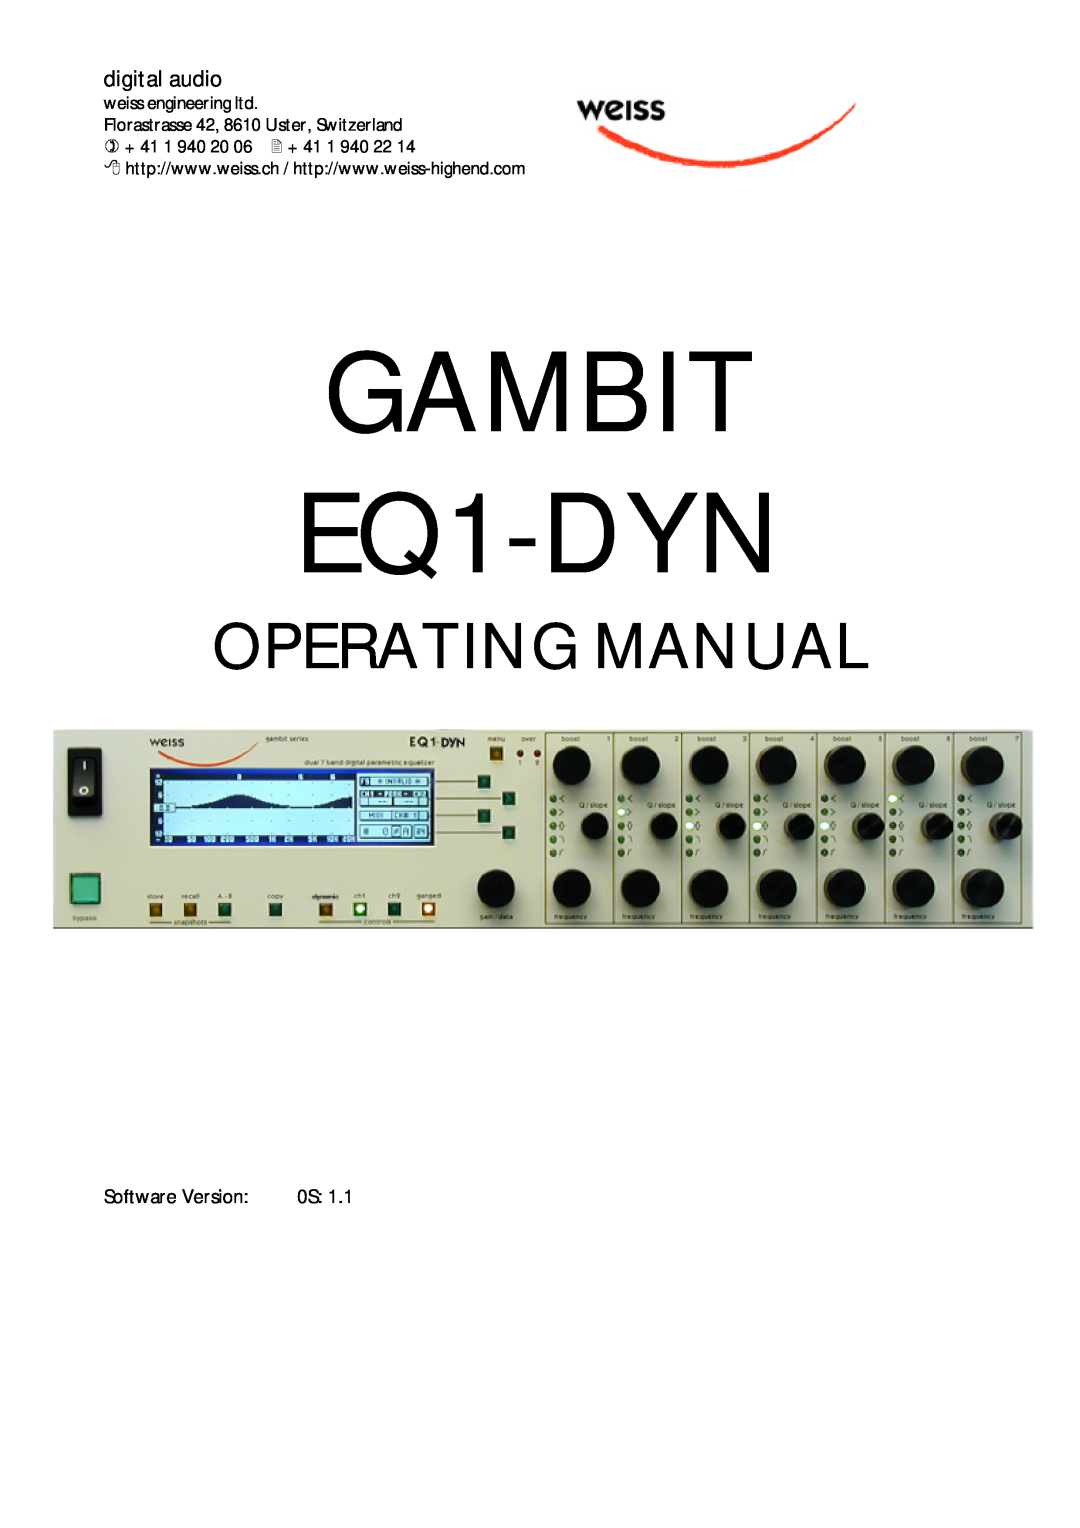 Edelweiss manual GAMBIT EQ1-DYN, Operating Manual 